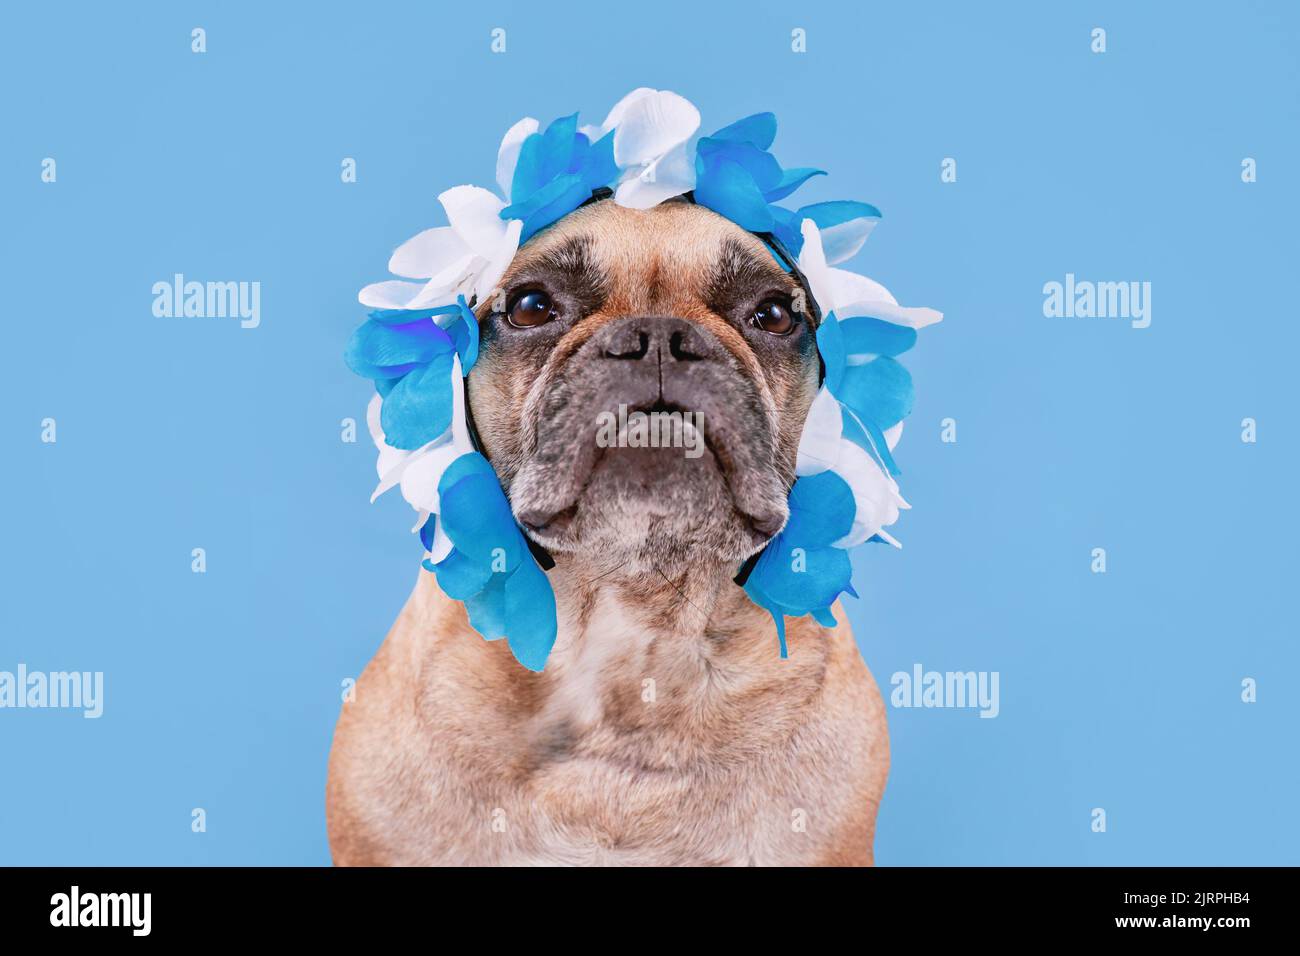 Cane Bulldog francese che indossa l'archetto Oktoberfest con i tradizionali colori blu e bianco Foto Stock